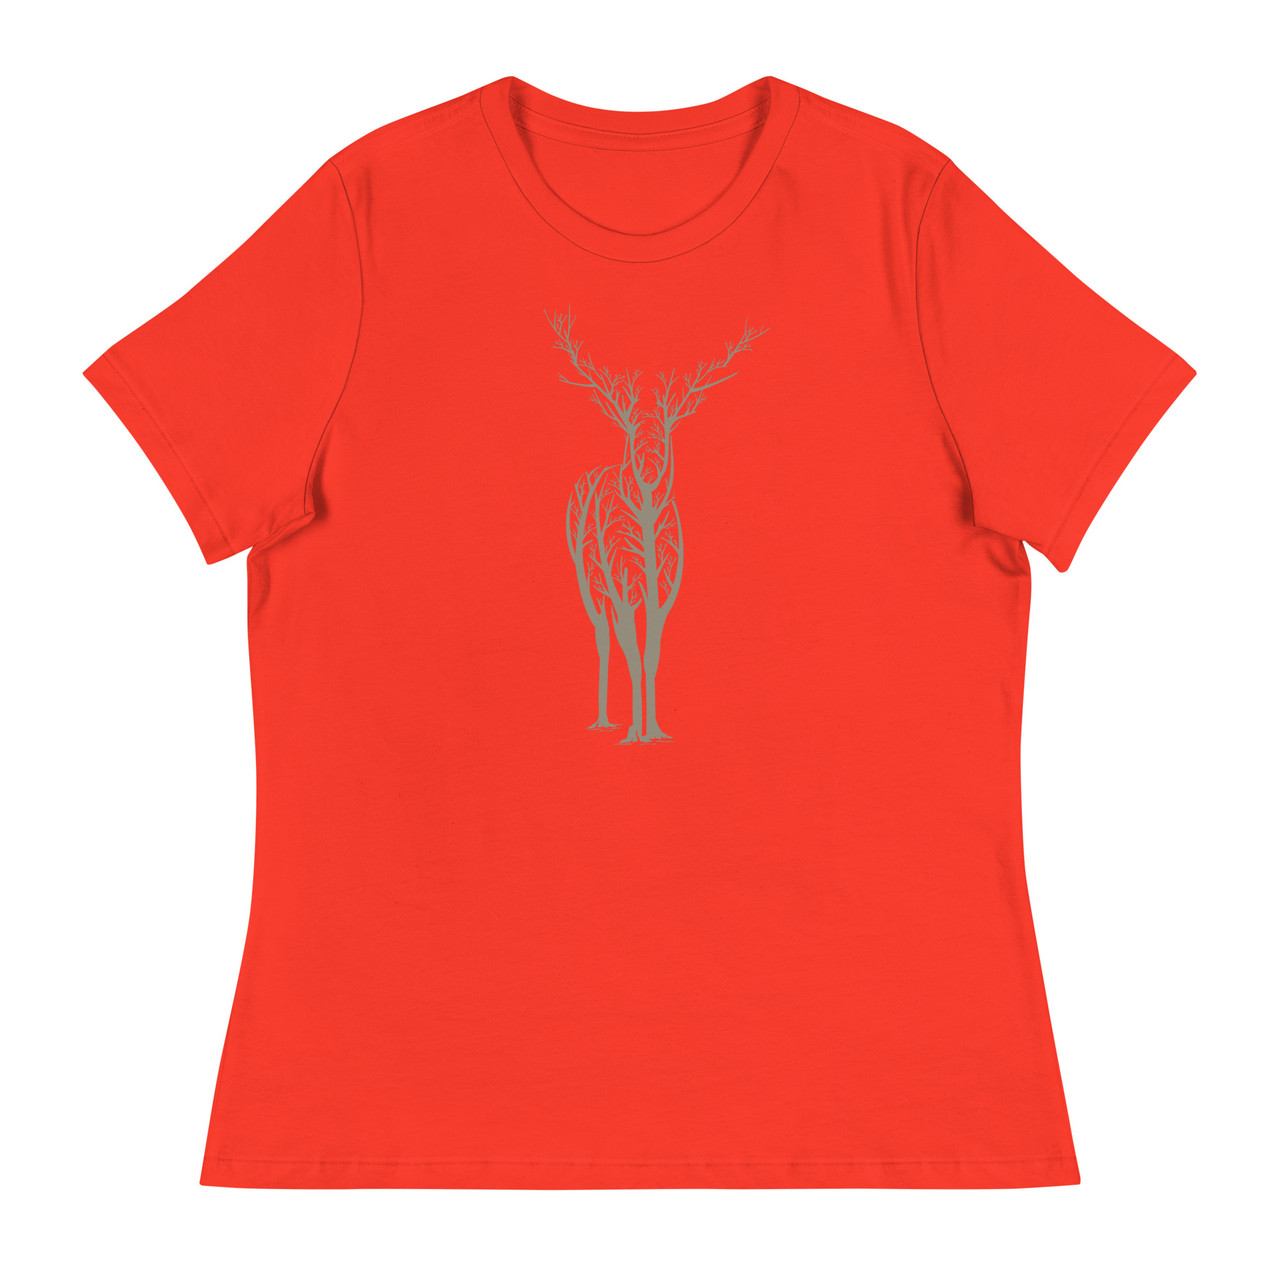 Deer Forest Women's Relaxed T-Shirt - Bella + Canvas 6400